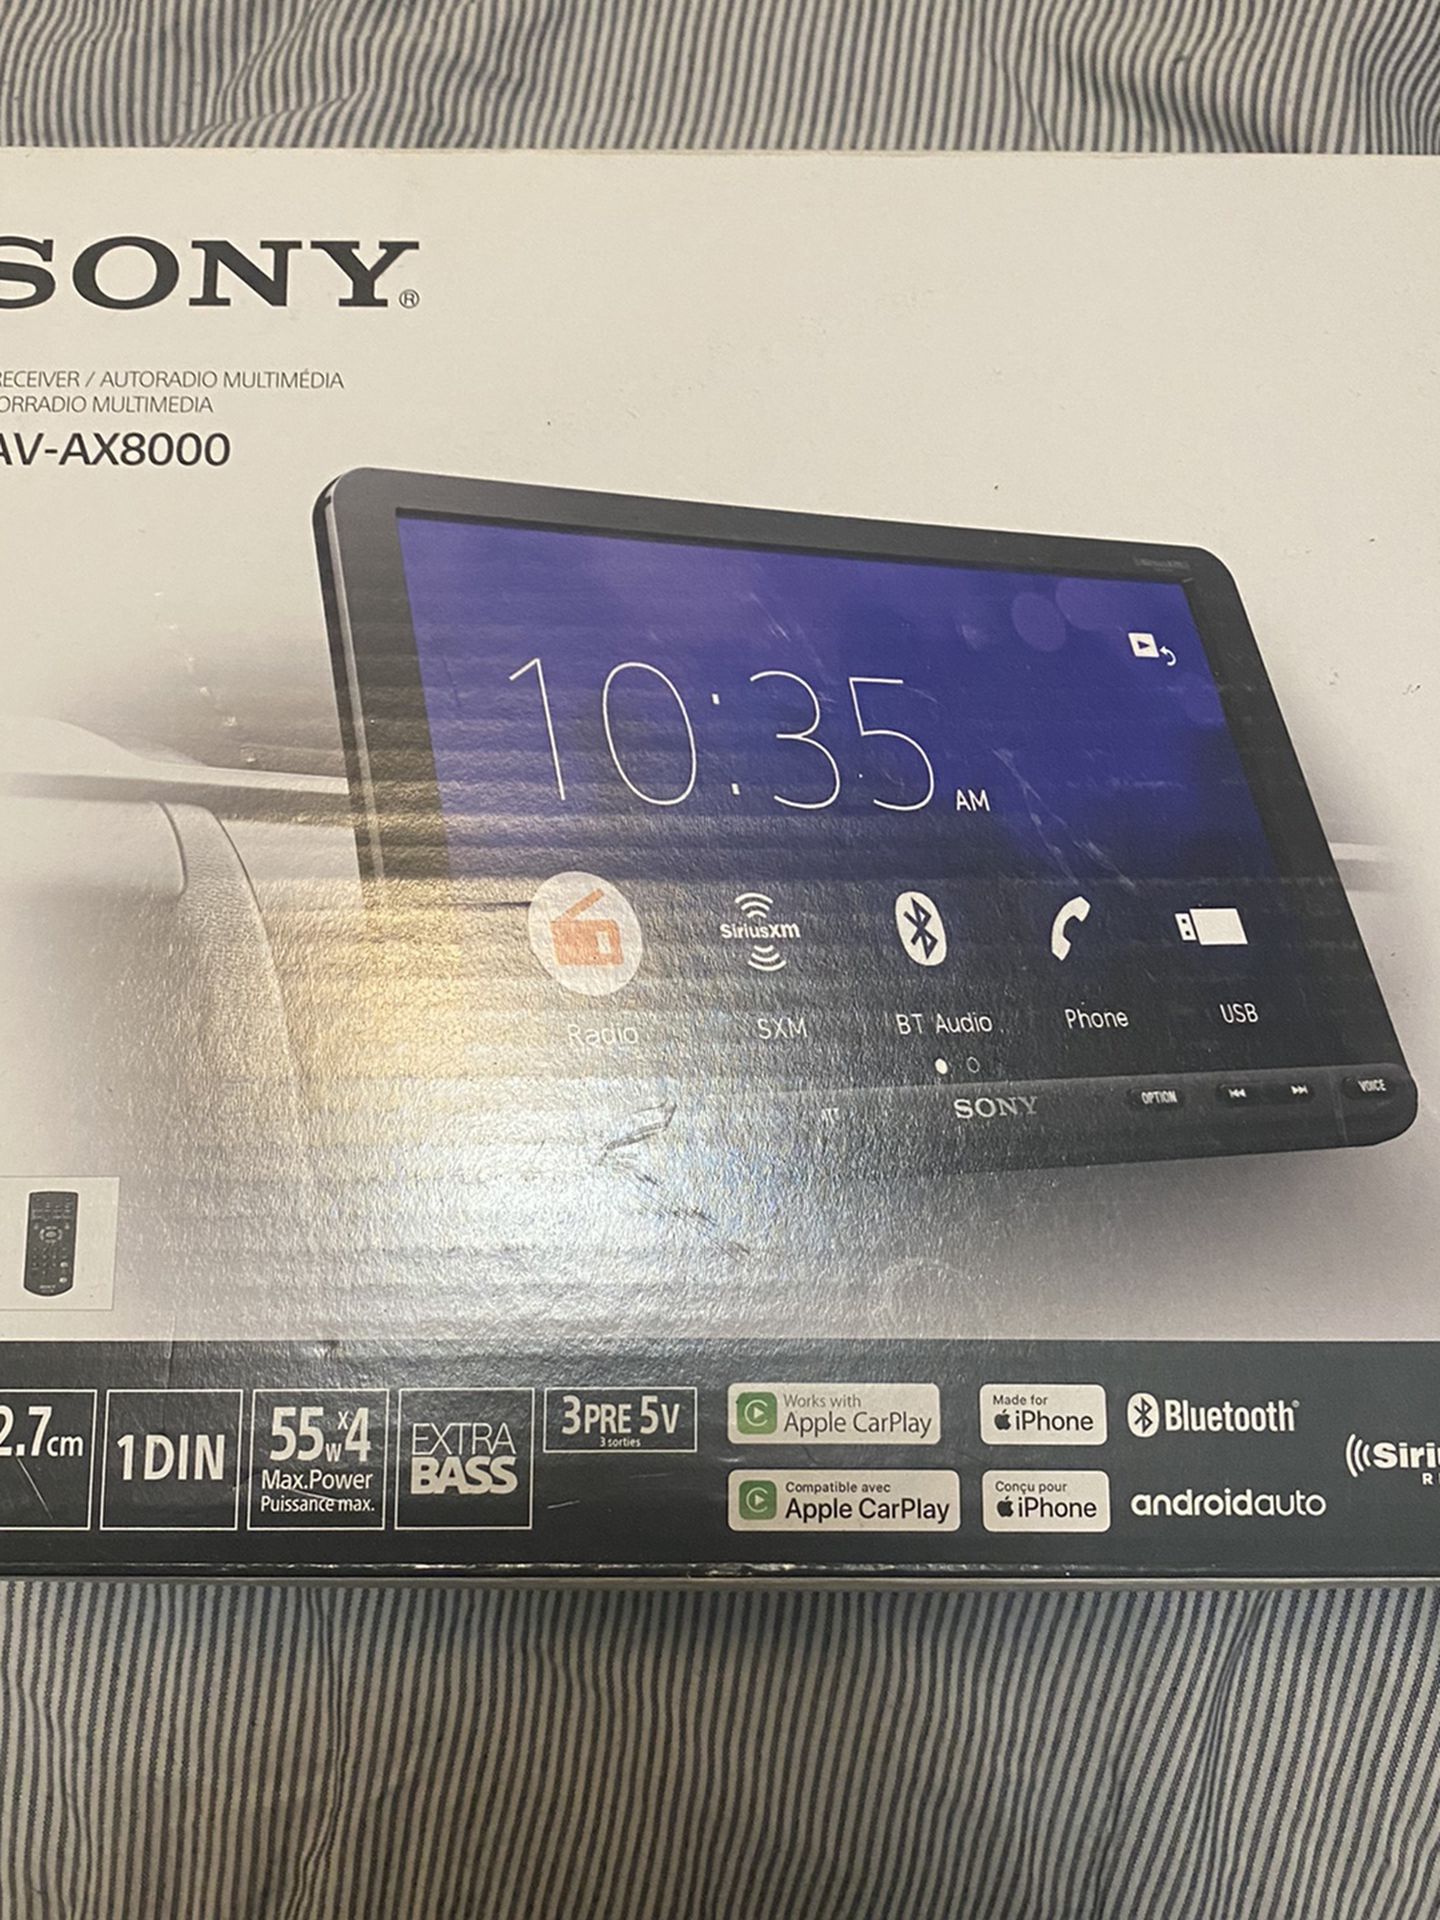 Sony Xav-ax8000